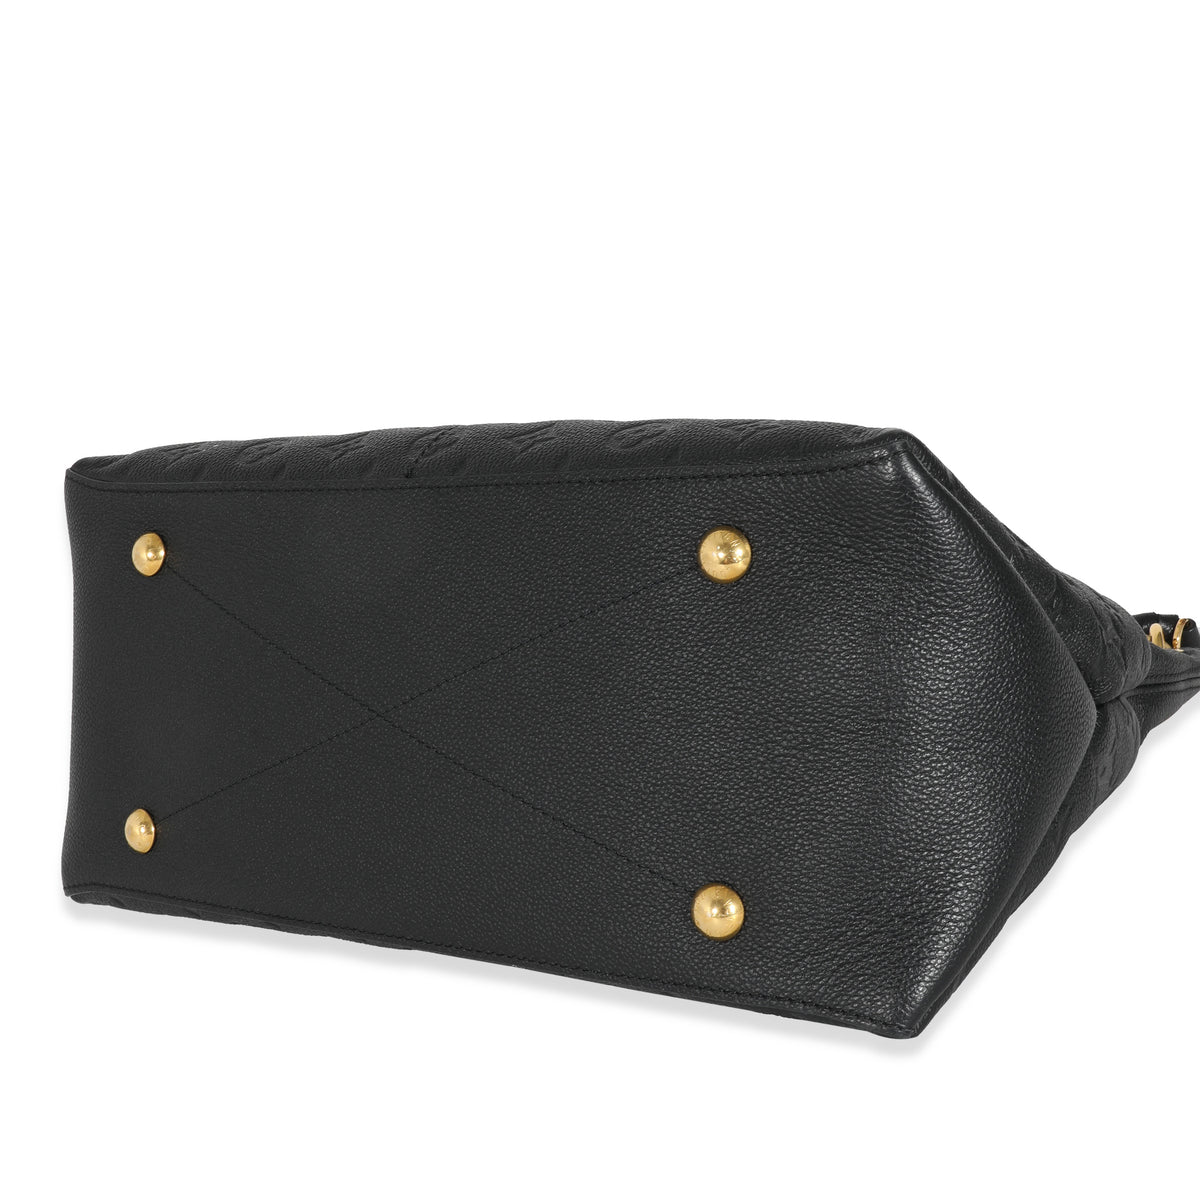 MAIDA HOBO BAG IN BLACK  Bags designer fashion, Fashion handbags